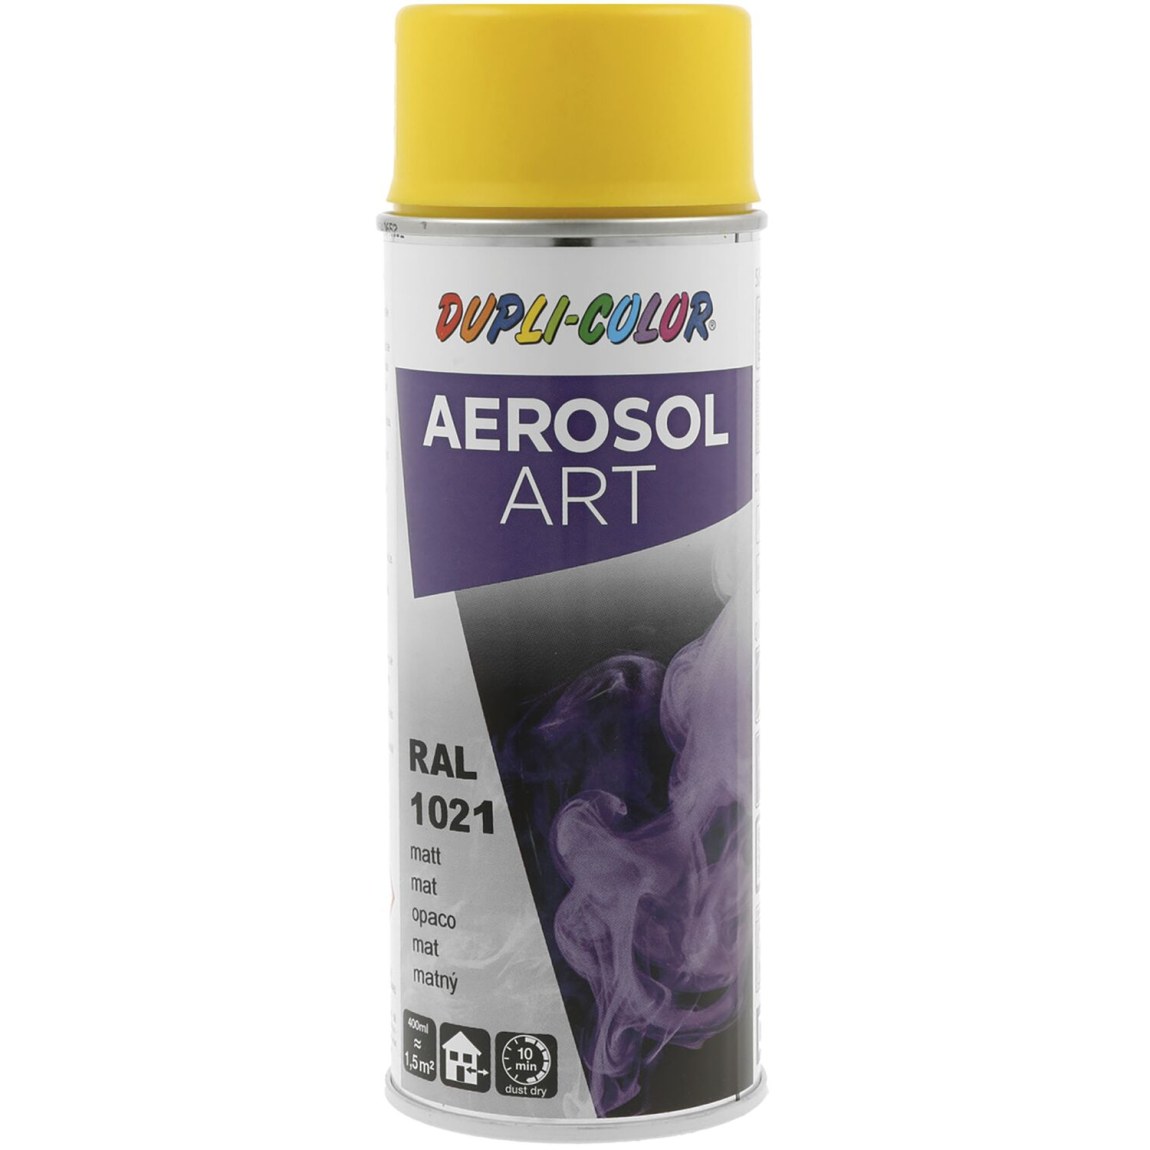 Dupli-Color Aerosol Art sprej 400 ml žlutá hořčič.mat / RAL 1021 - Železářství Chemicko-technické výrobky Technické aerosoly Lak ve Spreji